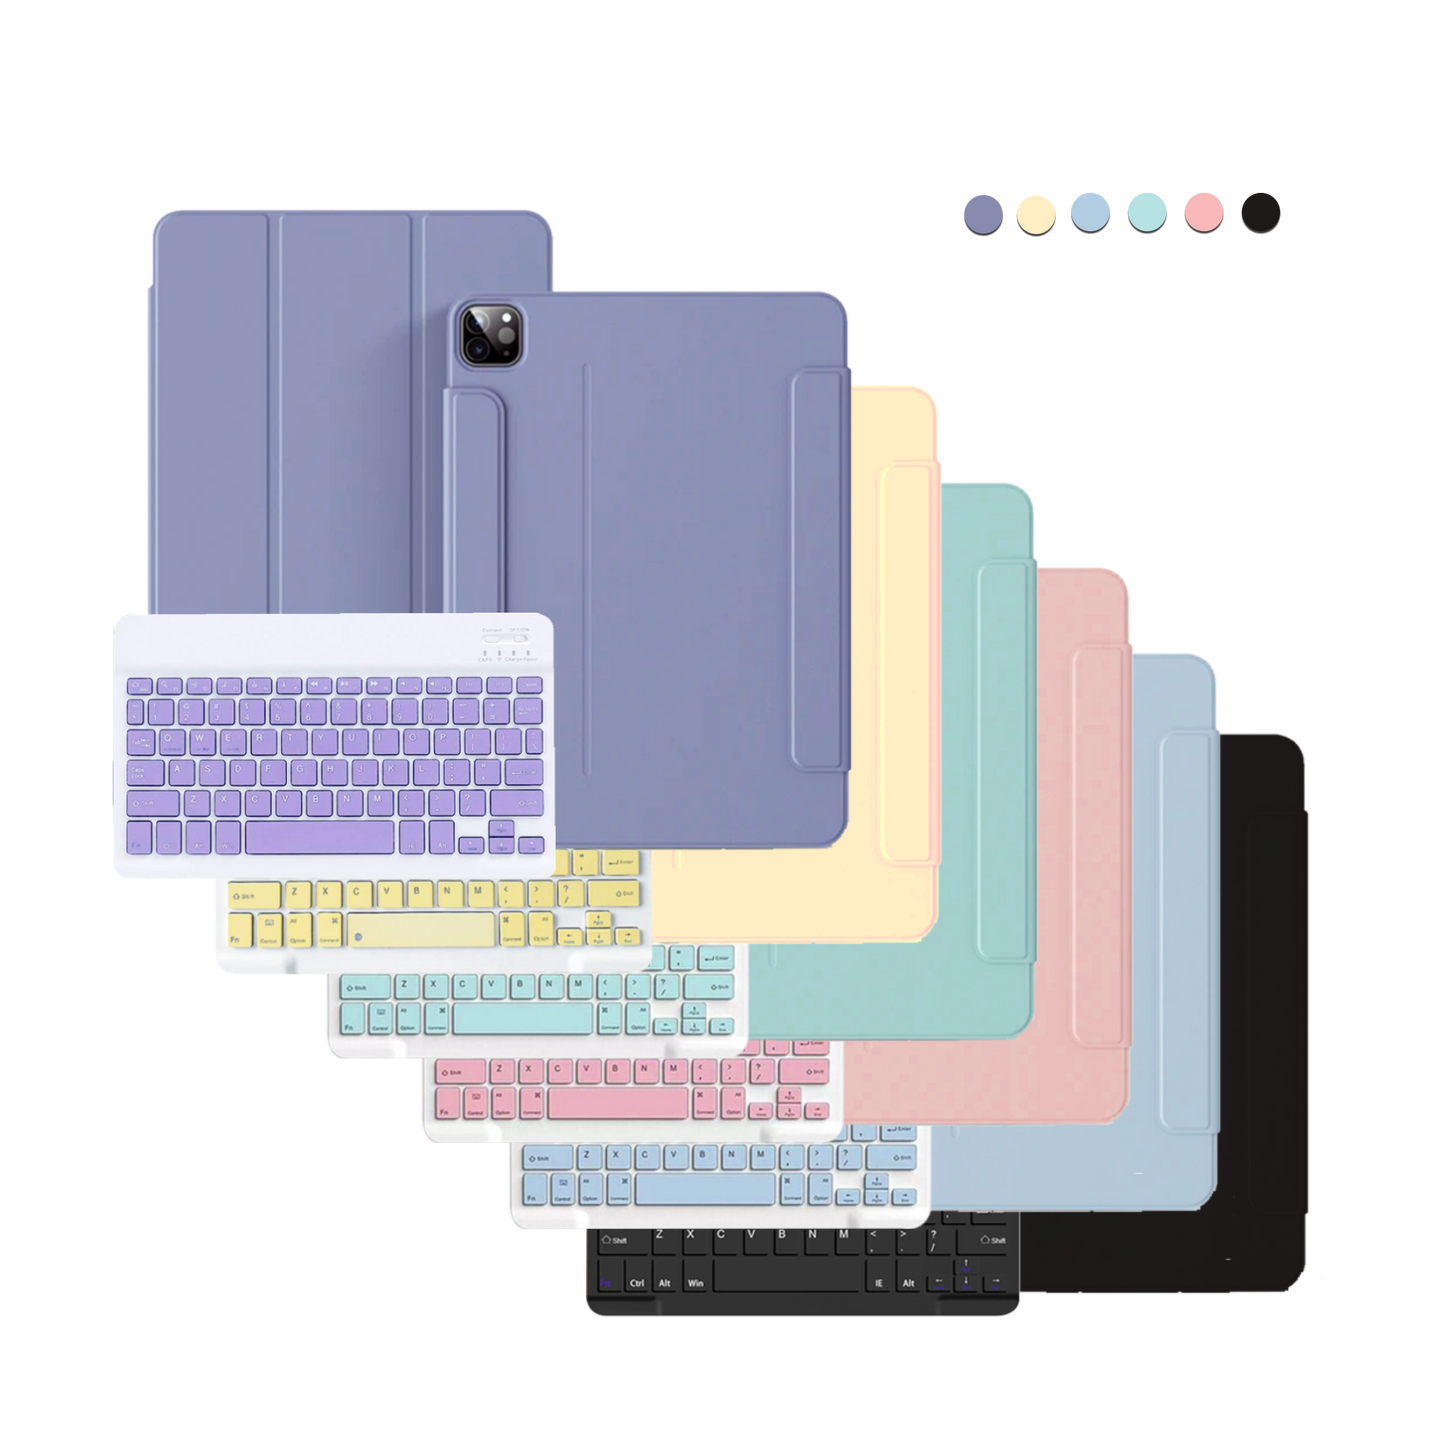 iPad Wireless Keyboard Flipcover - Self Love Sticker Pack 2.0